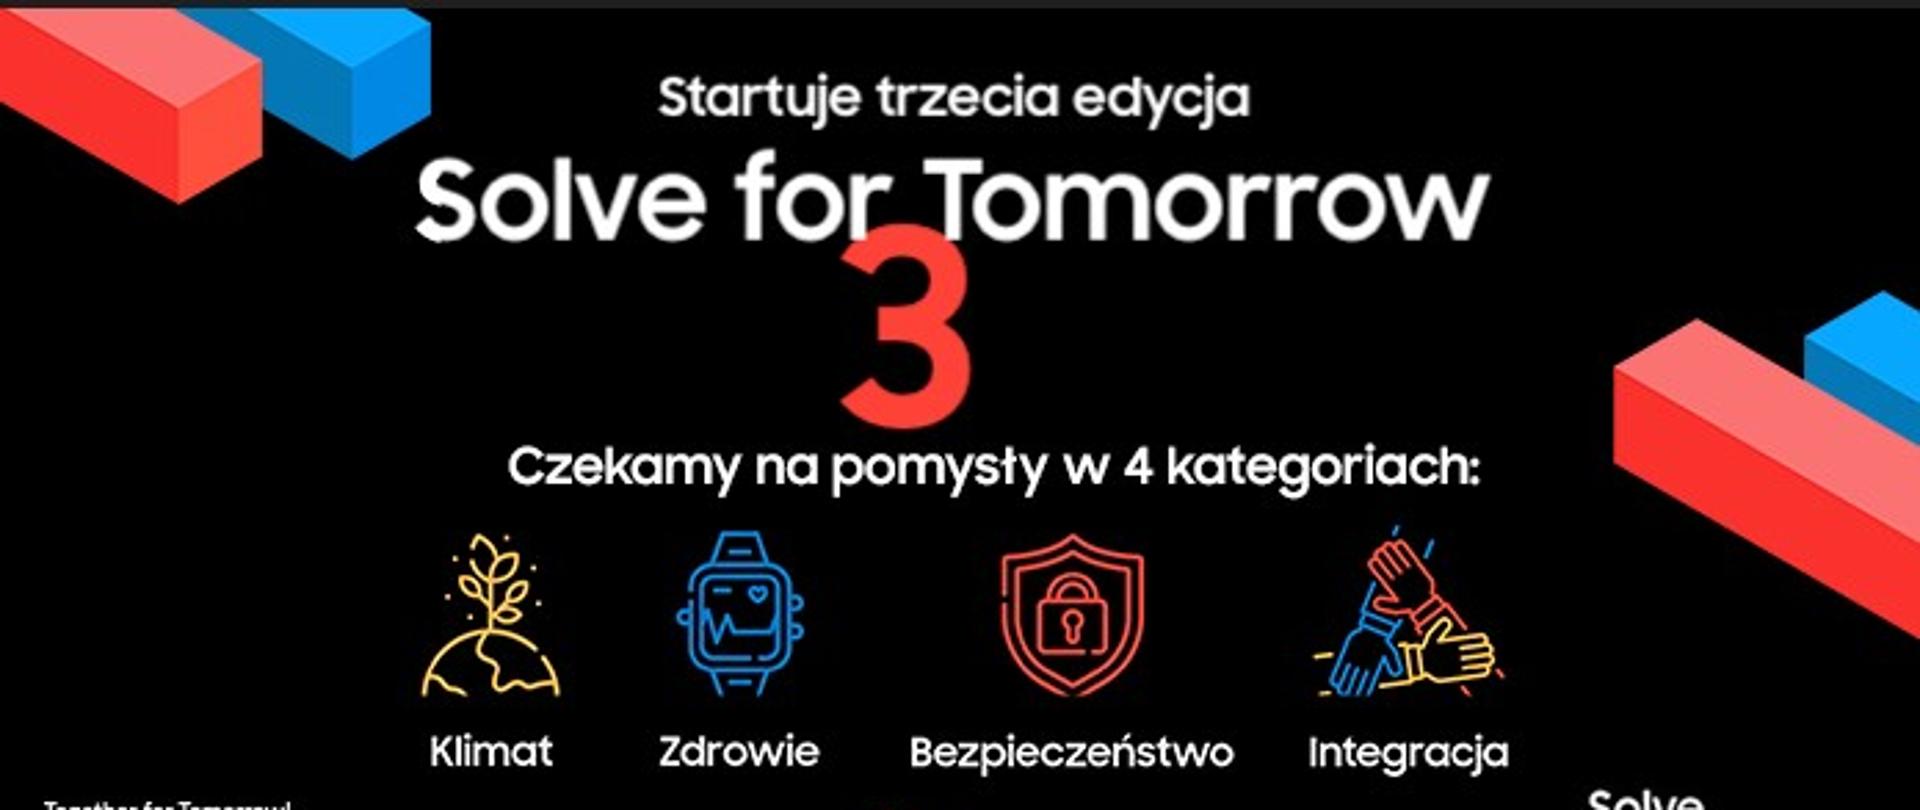 Plakat informacyjny o startującej III edycji programu Solve for Tomorrow